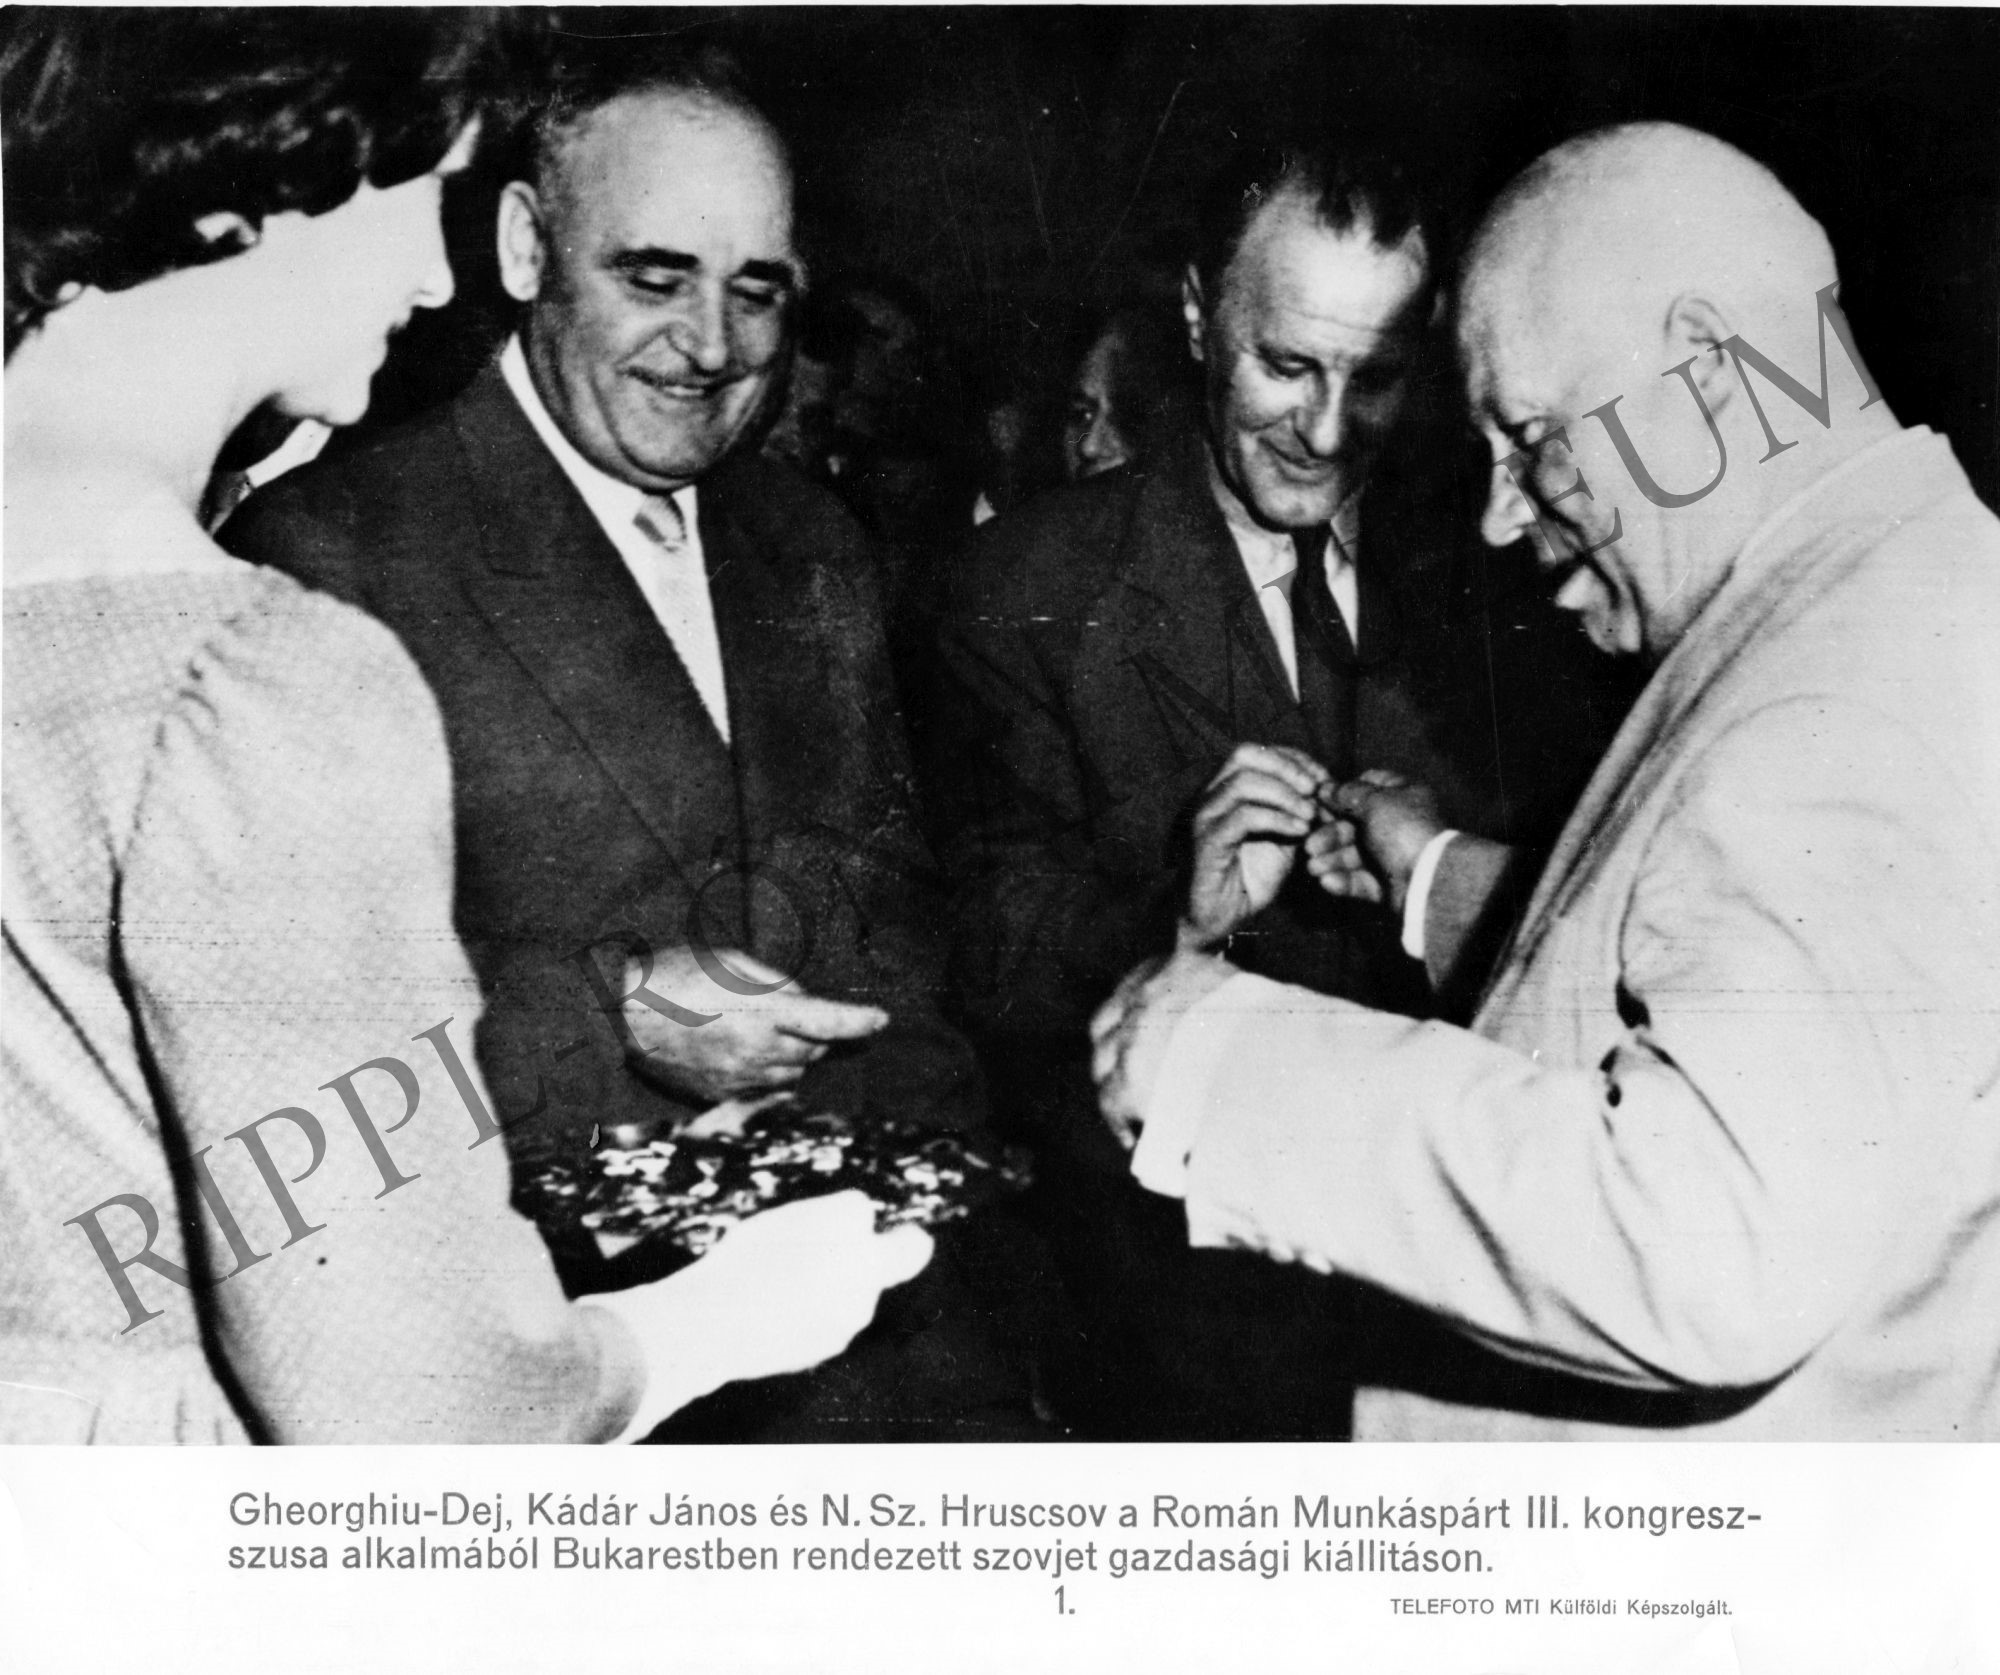 Gherghiu-Dej, Kádár János és N. Sz. Hruscsov a Román Munkáspárt III. kongresszusa alkalmából Bukarestben rendezett szovjet gazdasági kiállításon (Rippl-Rónai Múzeum CC BY-NC-SA)